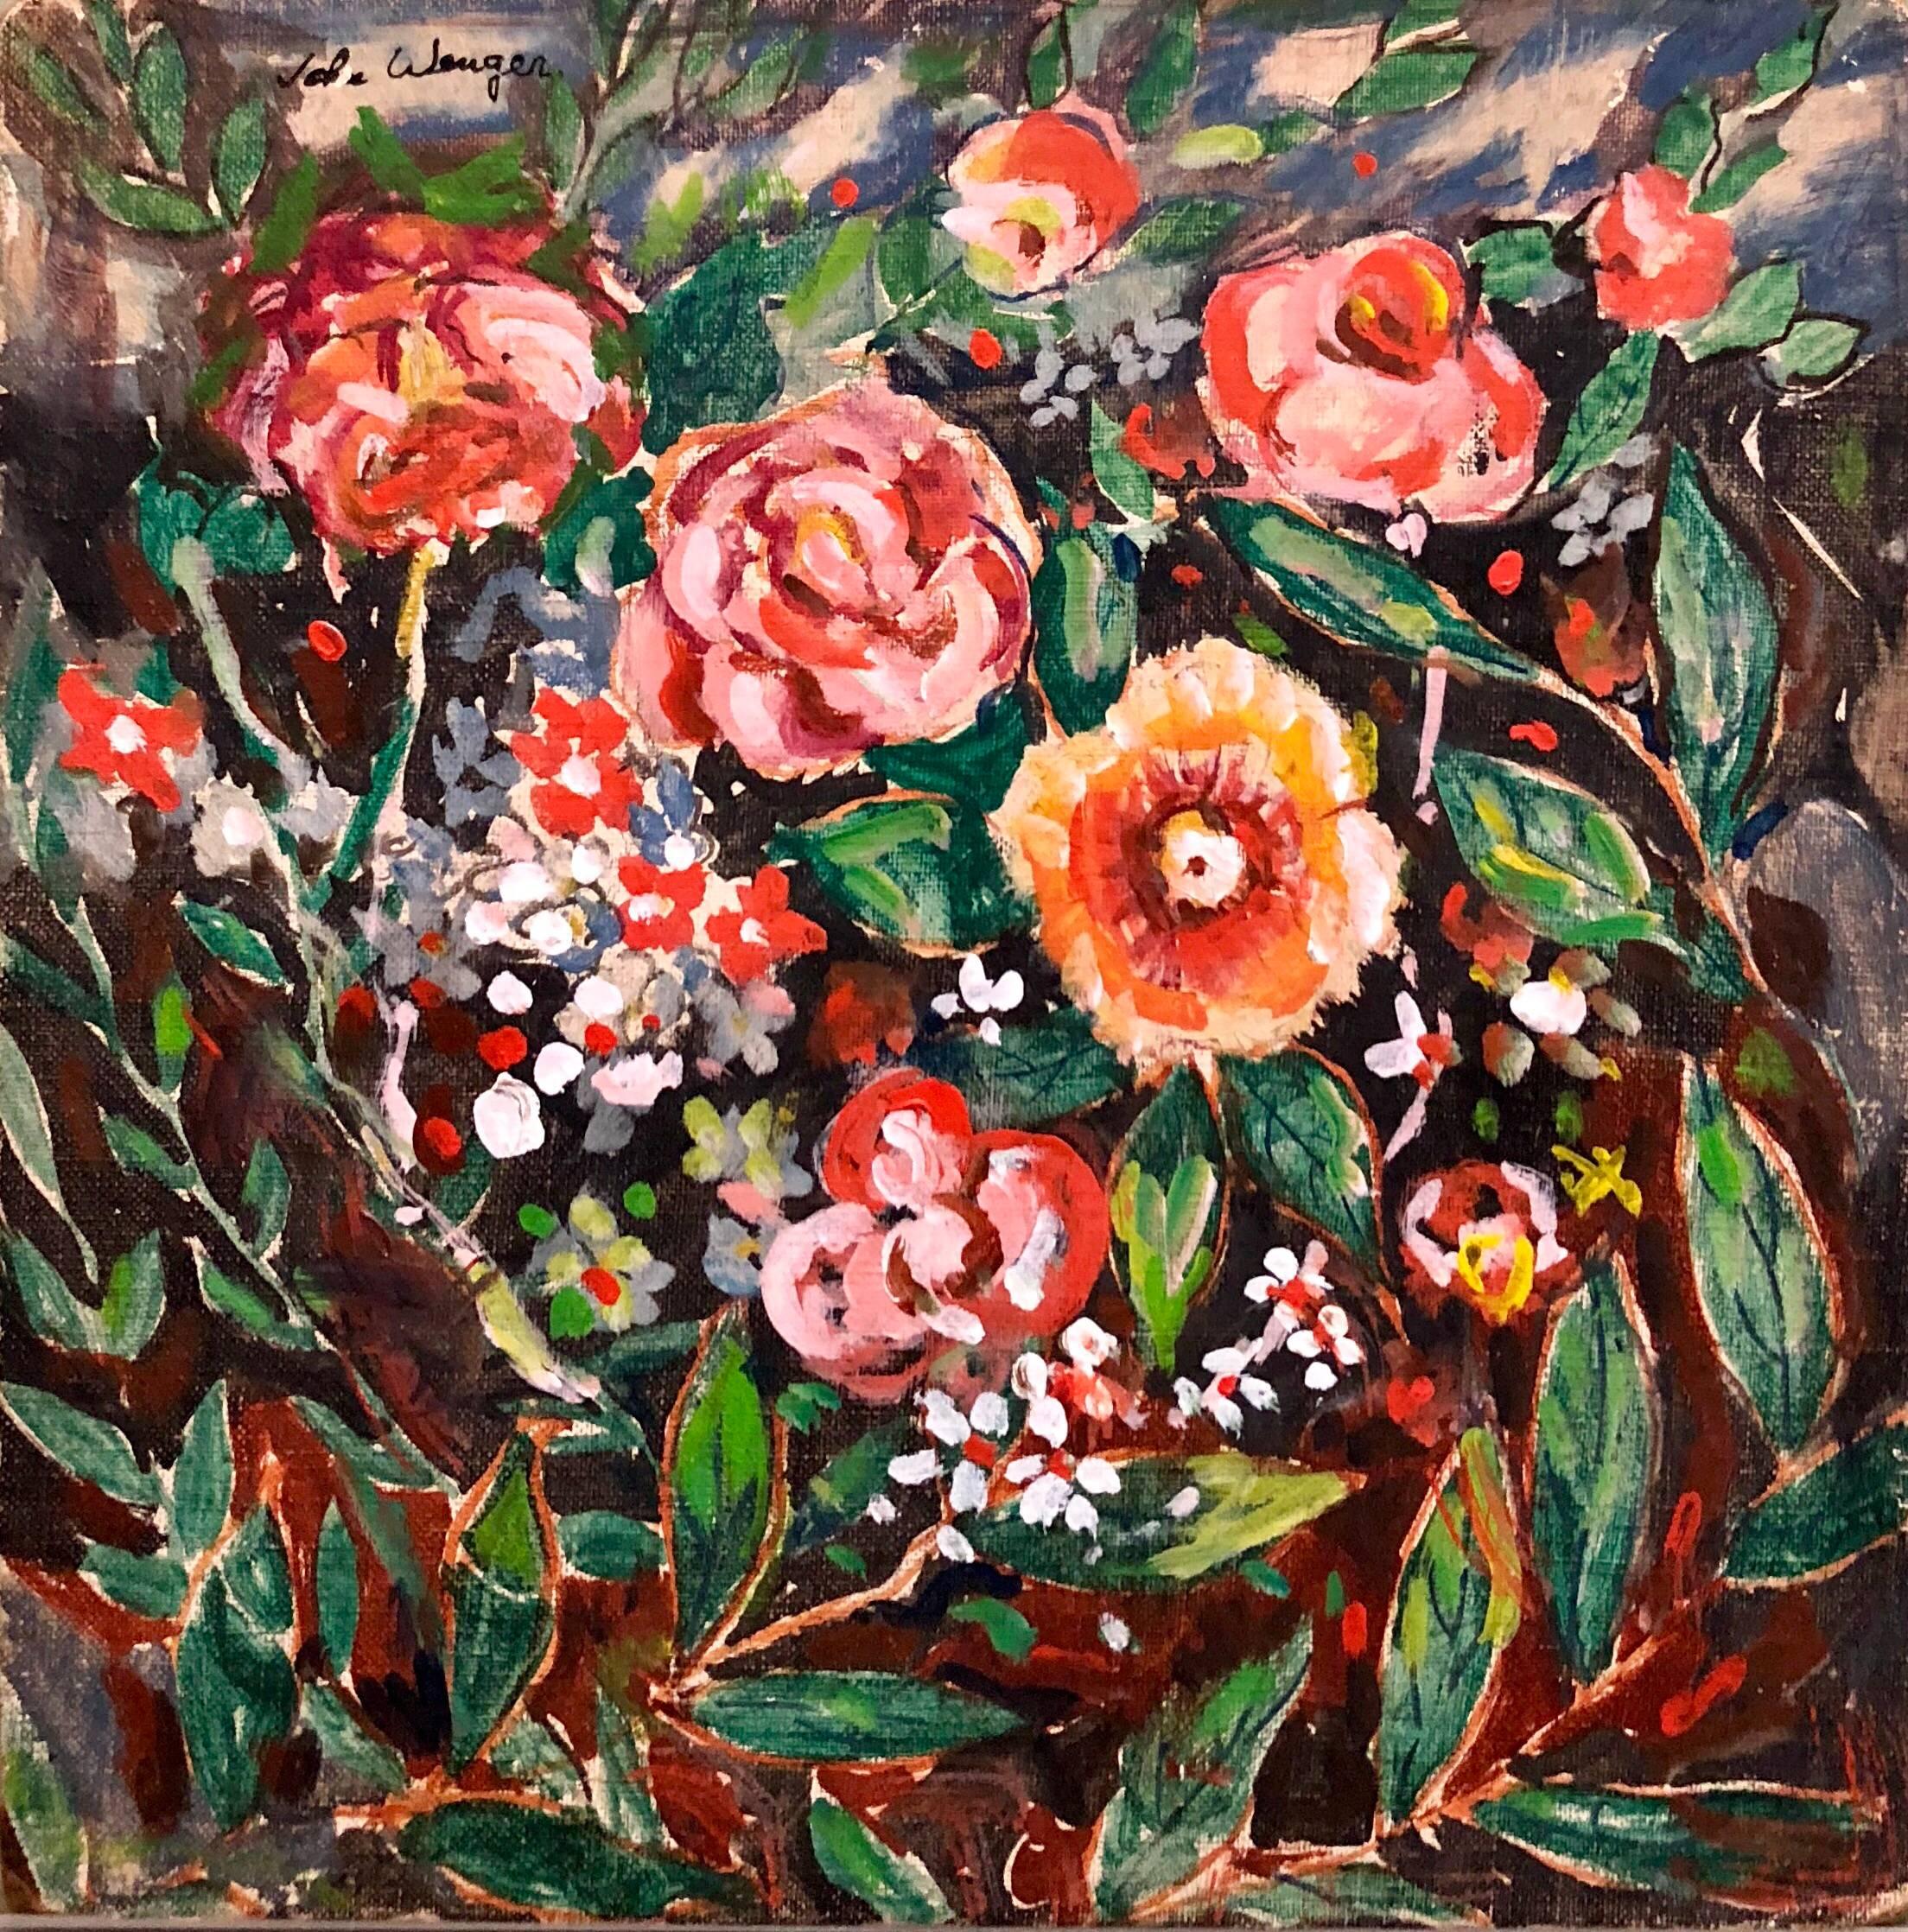 Wilde Blumen, lebhaftes, farbenfrohes, modernes Ölgemälde (Amerikanische Moderne), Painting, von John Wenger